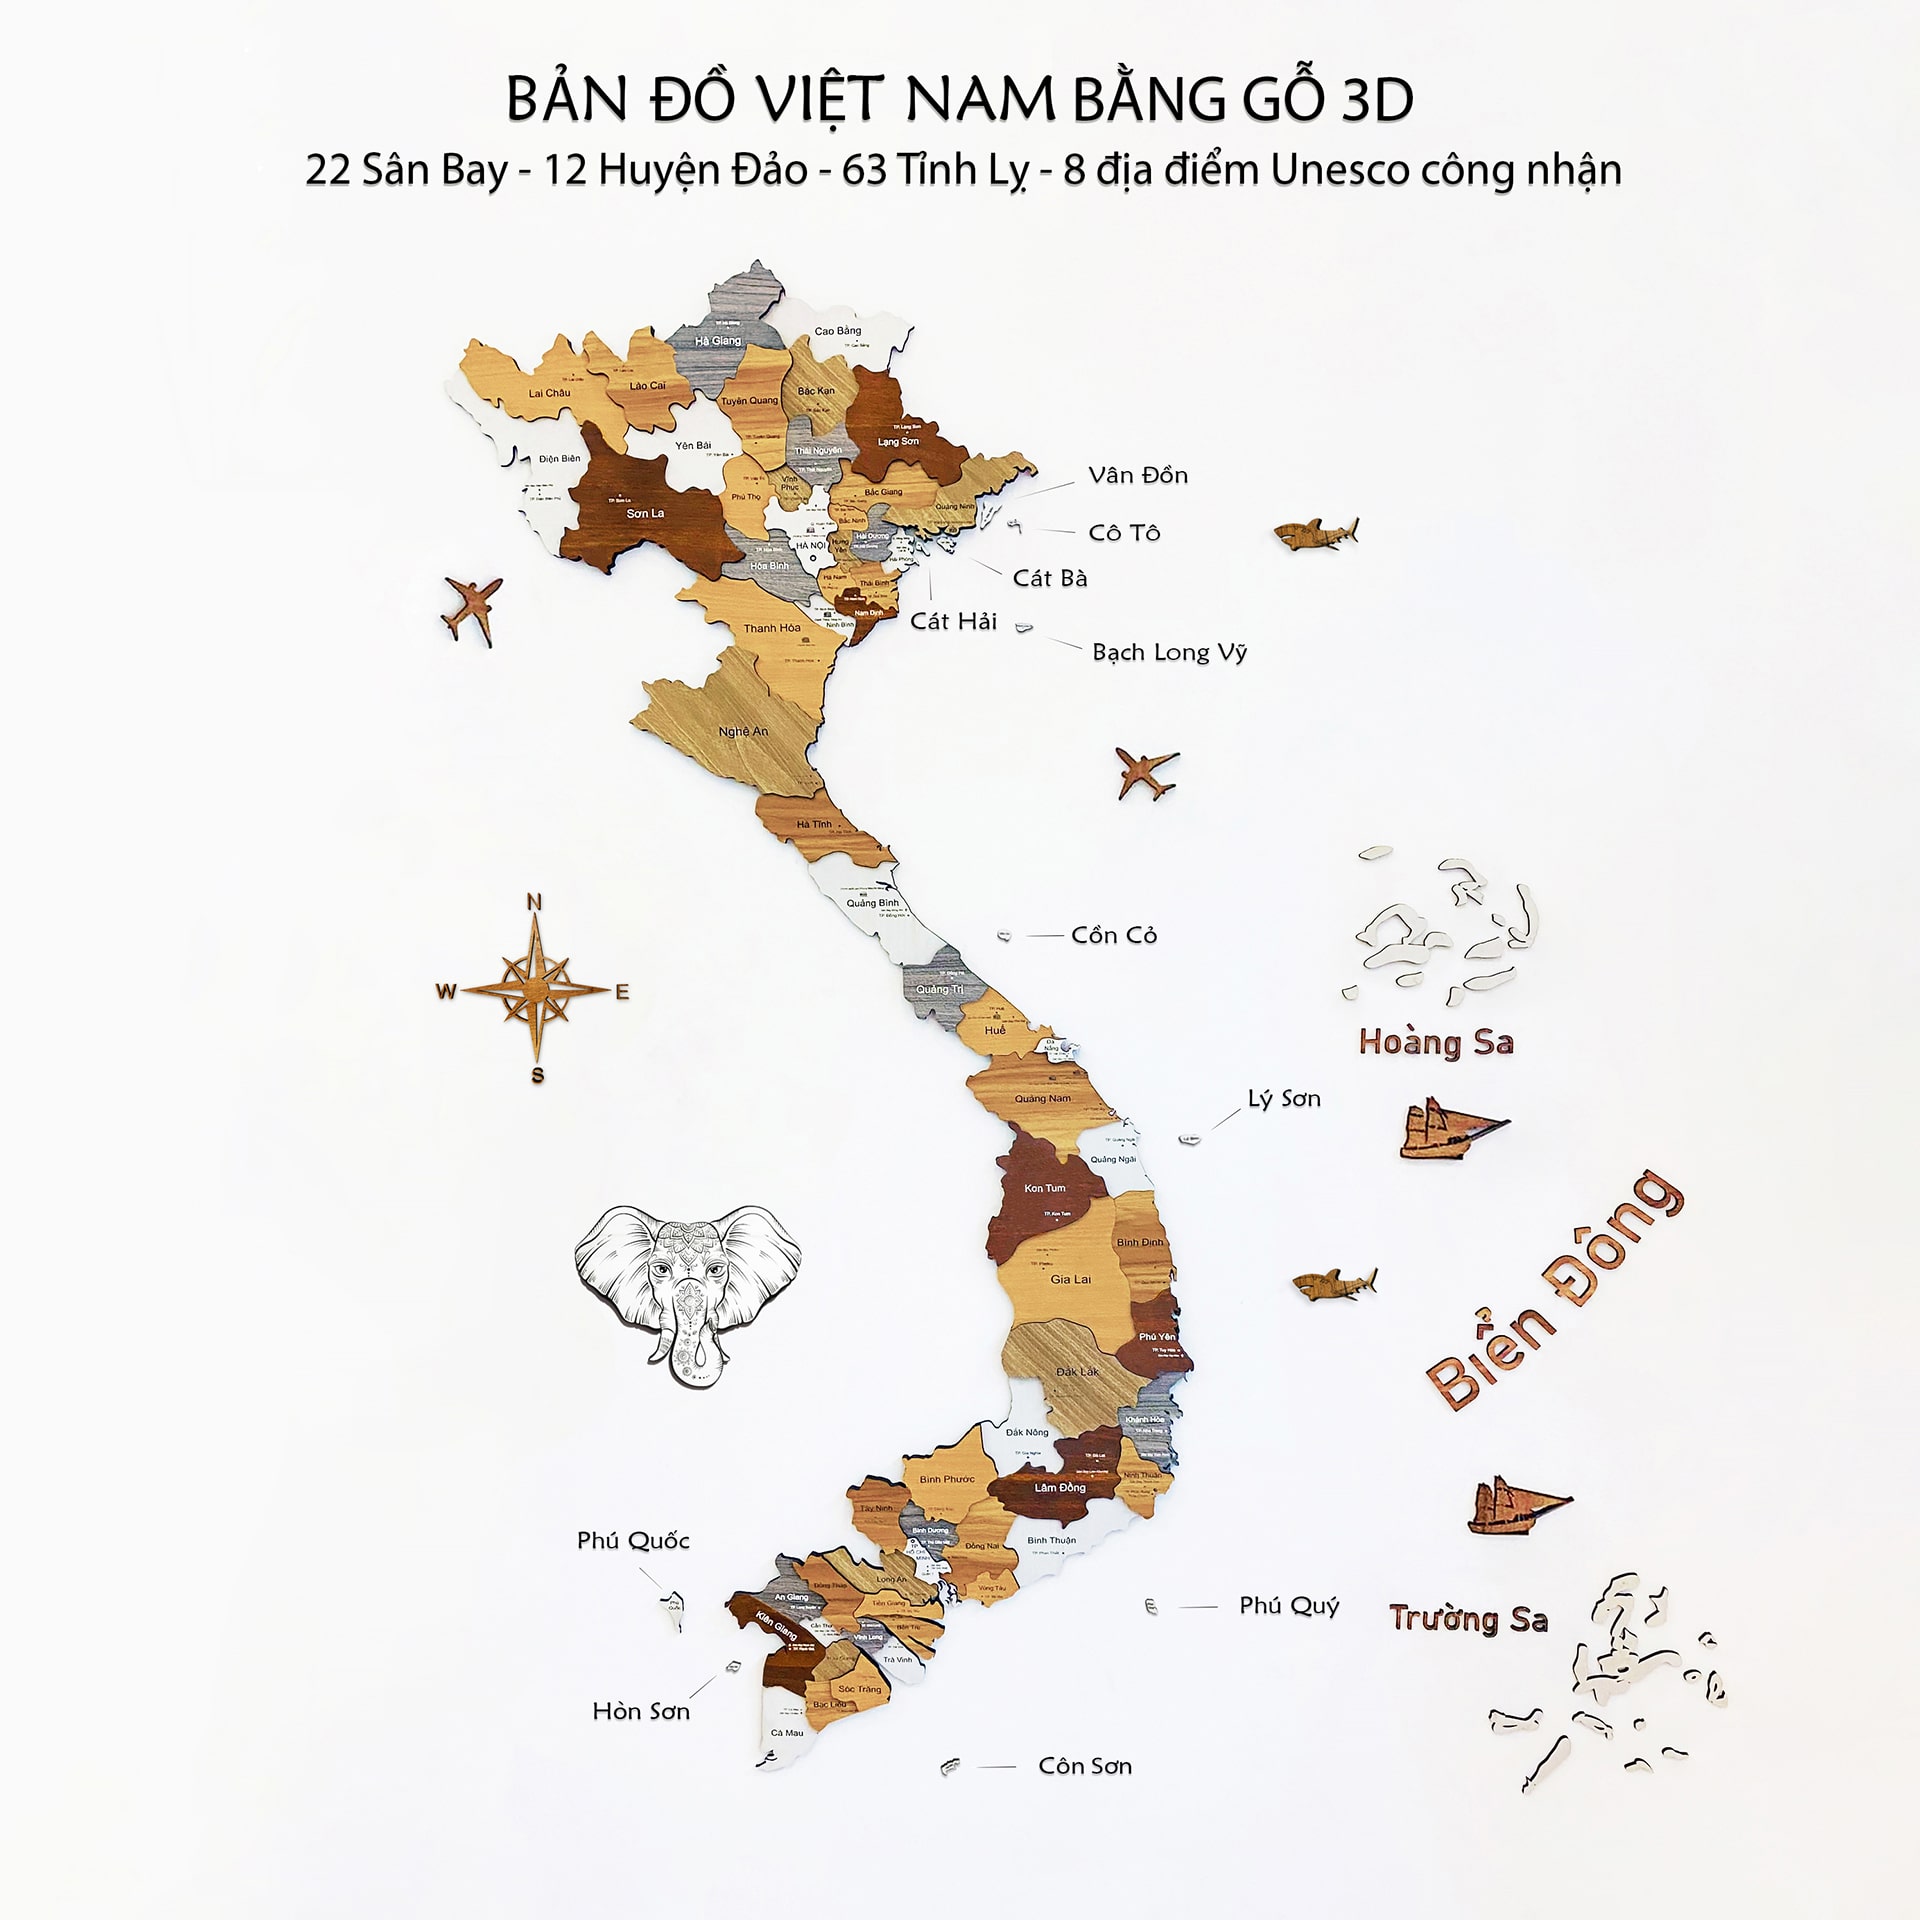 Bản đồ địa hình Việt Nam 3D treo tường sẽ đưa bạn trở về những cung đường đẹp nhất của Việt Nam. Với công nghệ 3D hiện đại, bạn có thể nhìn thấy mọi chi tiết và địa hình đồ sộ của quê hương yêu dấu.